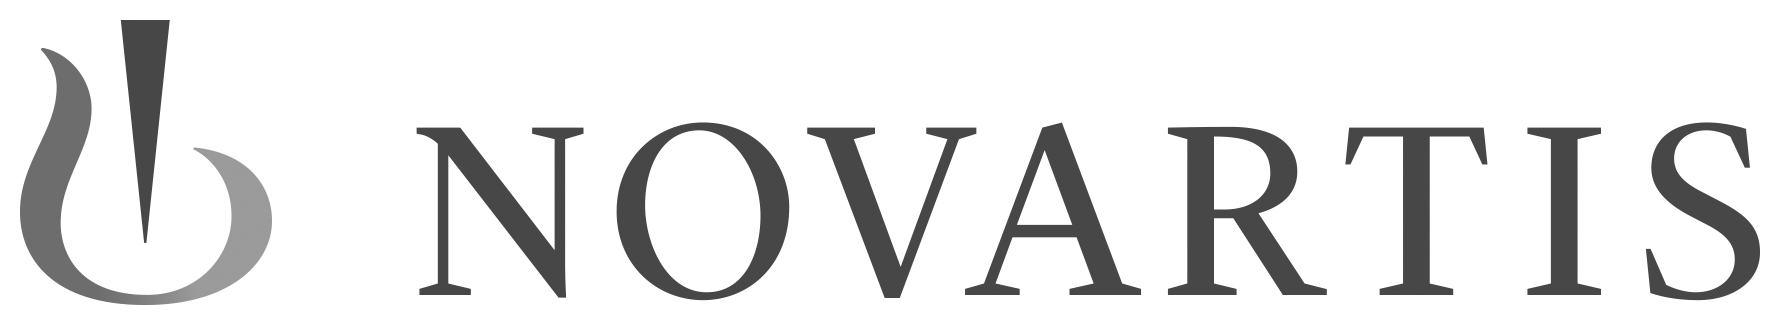 novartis-logo-transparent.png